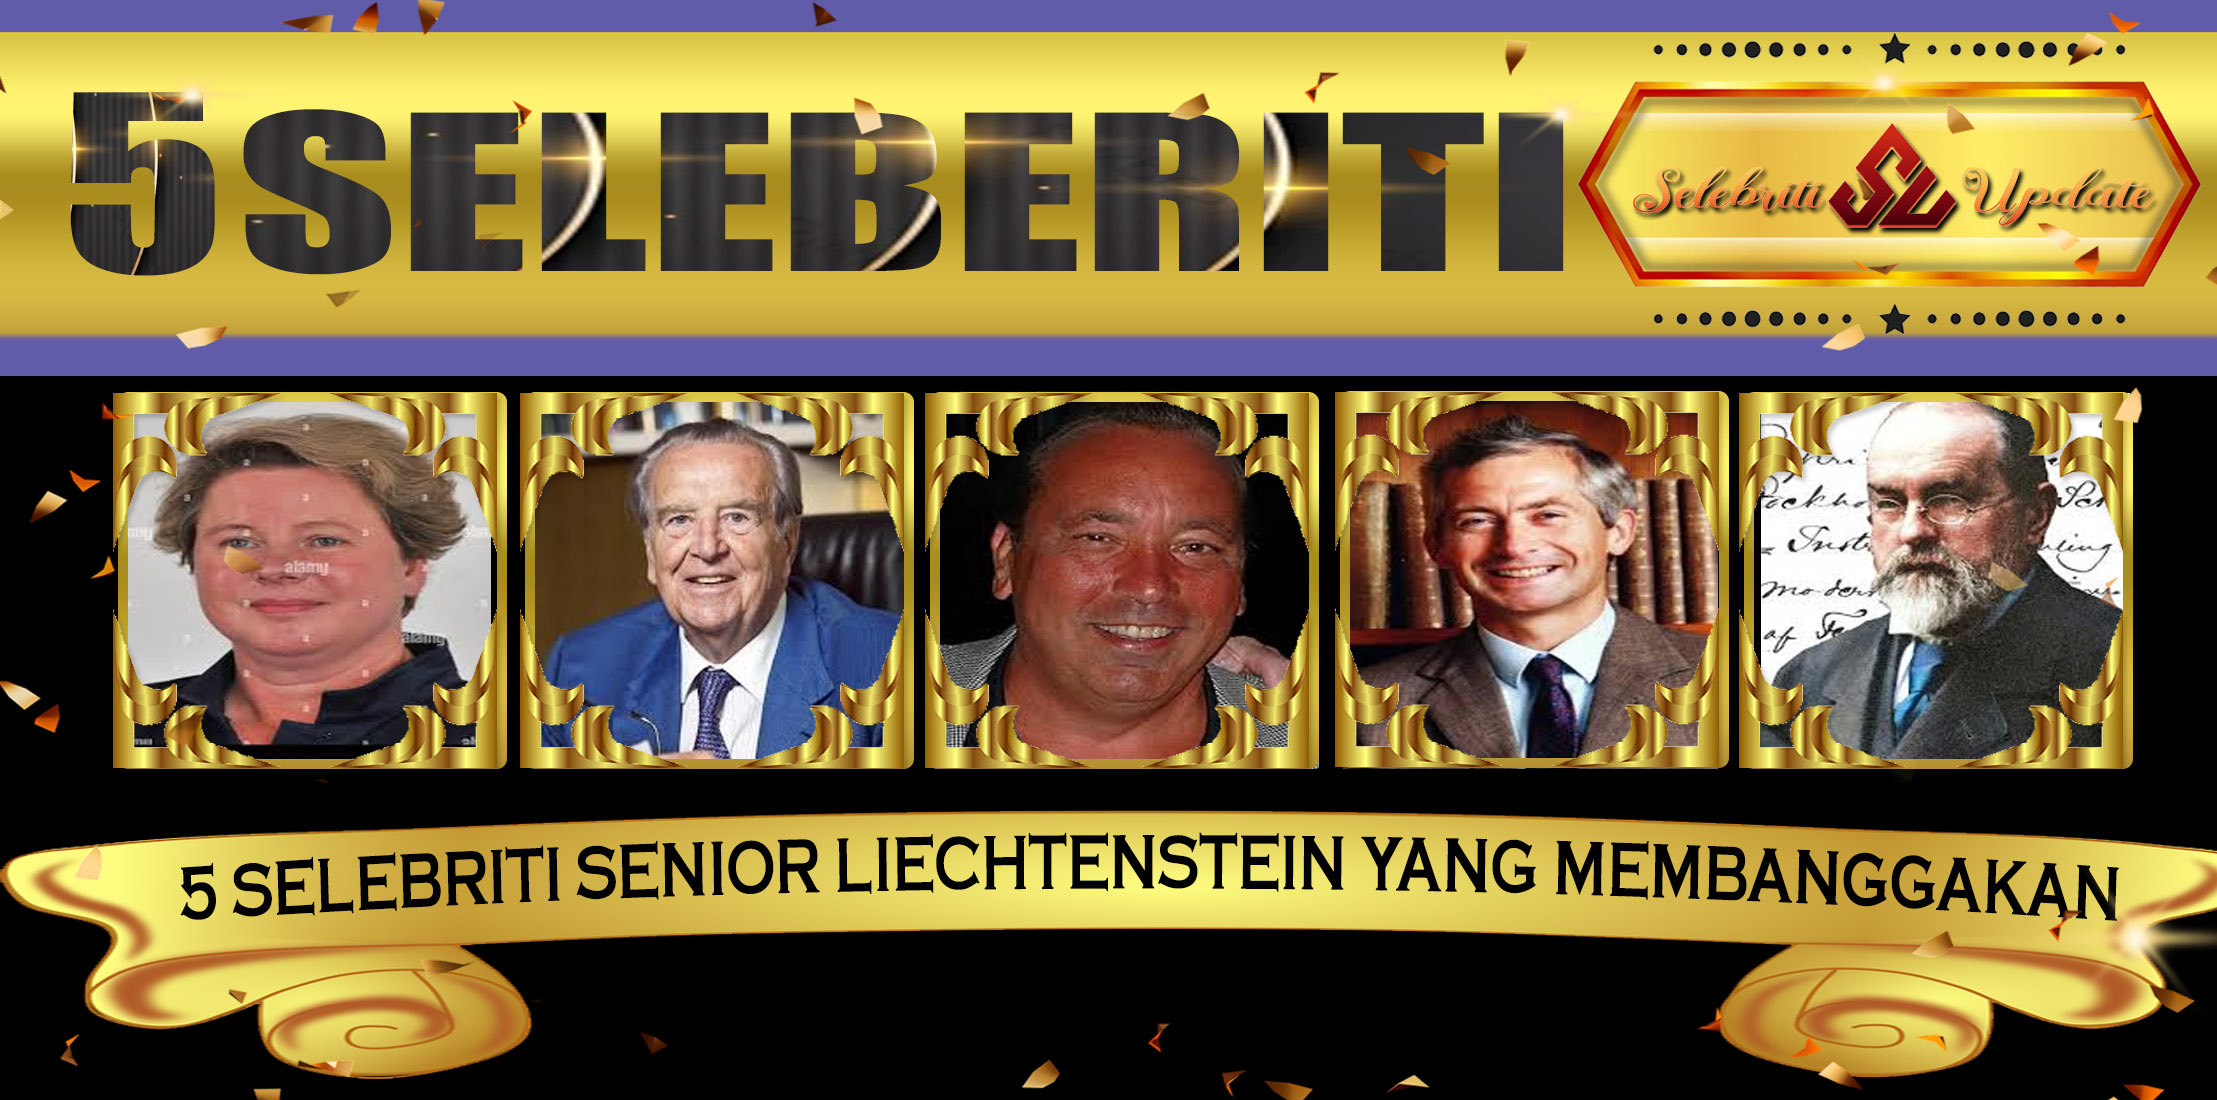 5 Selebriti Senior Liechtenstein